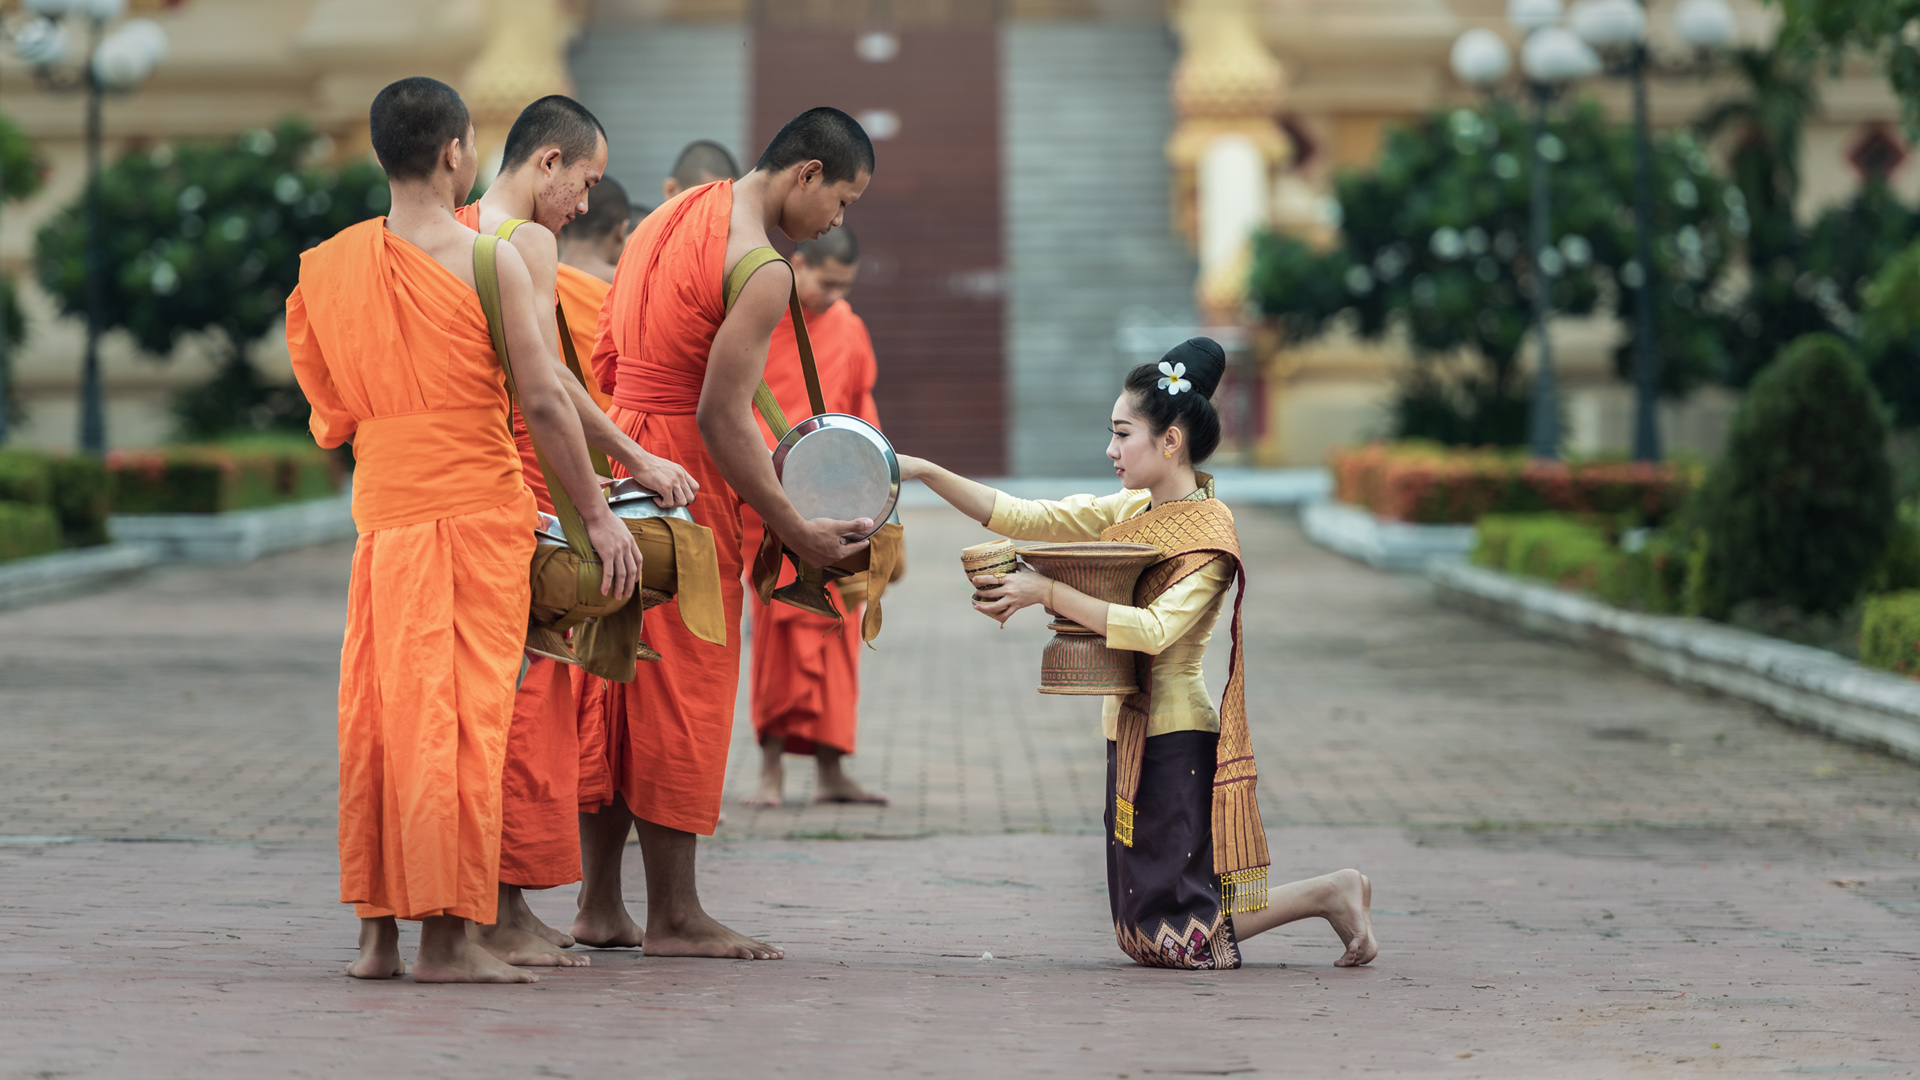 曼谷 佛教 和尚 女孩祈祷桌面壁纸